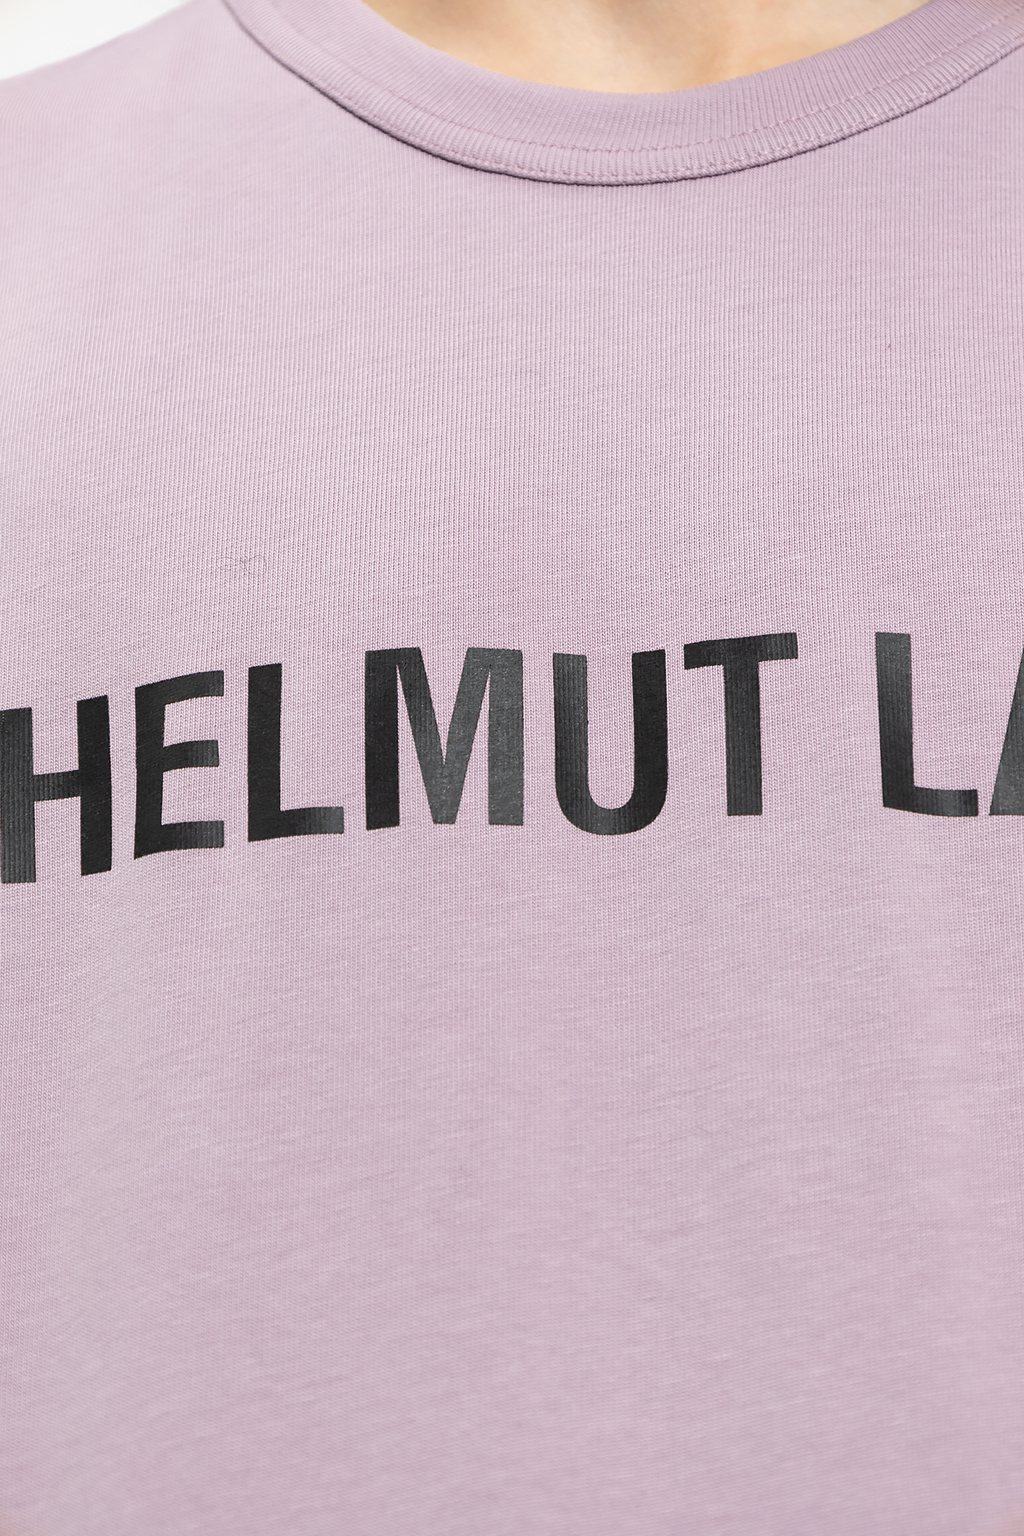 Helmut Lang moncler padded hooded jacket item